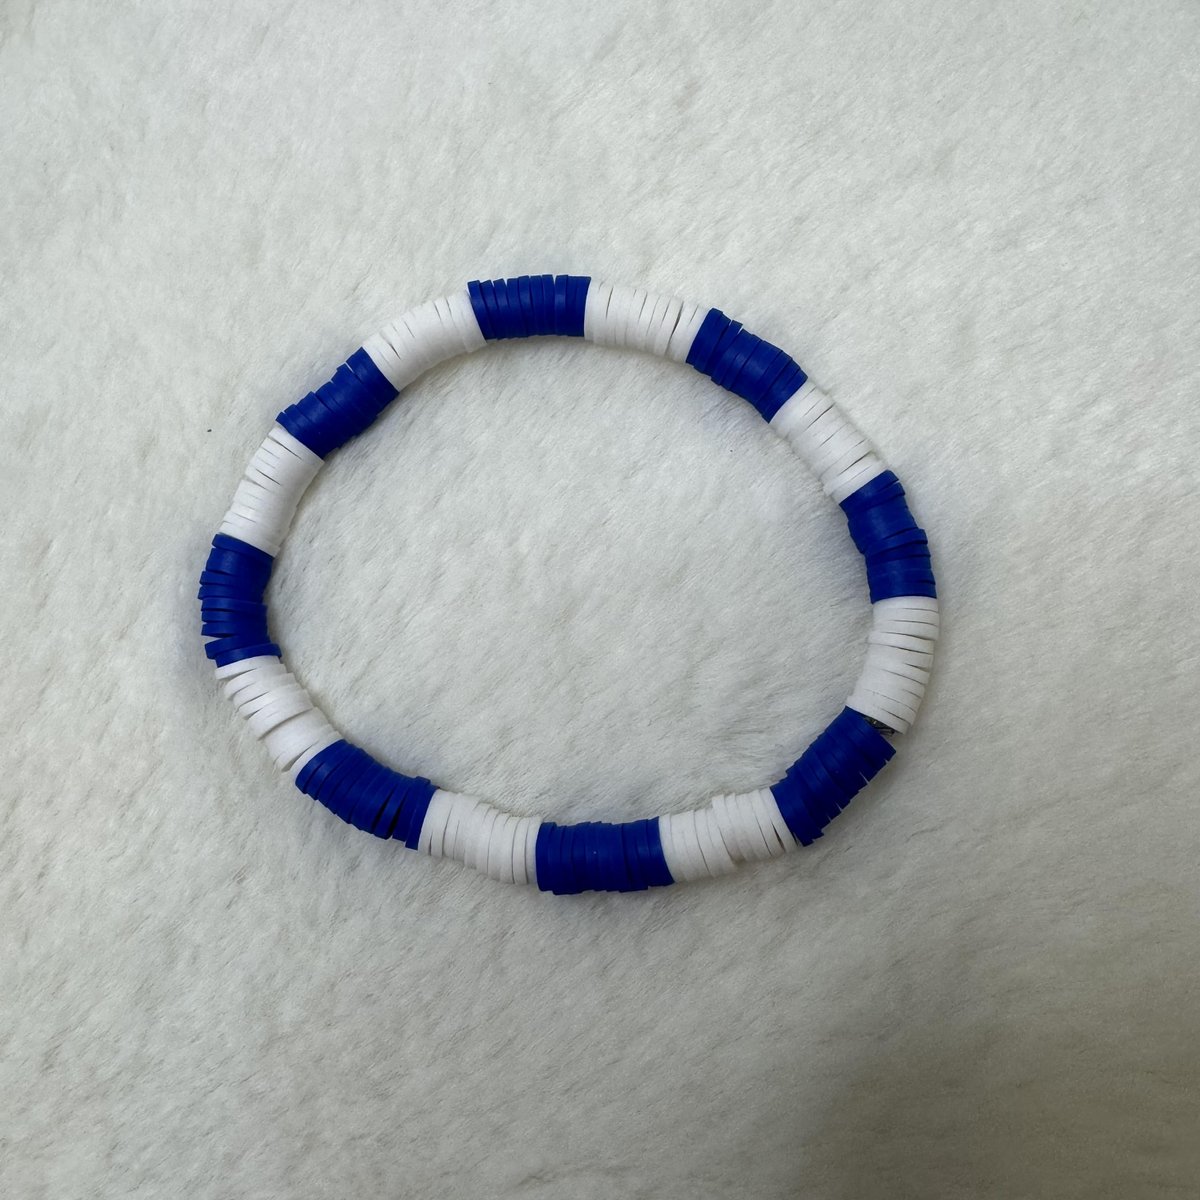 Navy Blue and White Heishi Clay Bead Bracelet #1

aldesignsbyashley.etsy.com

#etsyshop #etsyseller #etsyhandmade #etsy #handmade #handmadejewelry #handmadeearrings #earrings #handmadeearringsforsale #earringstyle #etsygifts #etsysellersofinstagram #jewelry #jewelrydesign